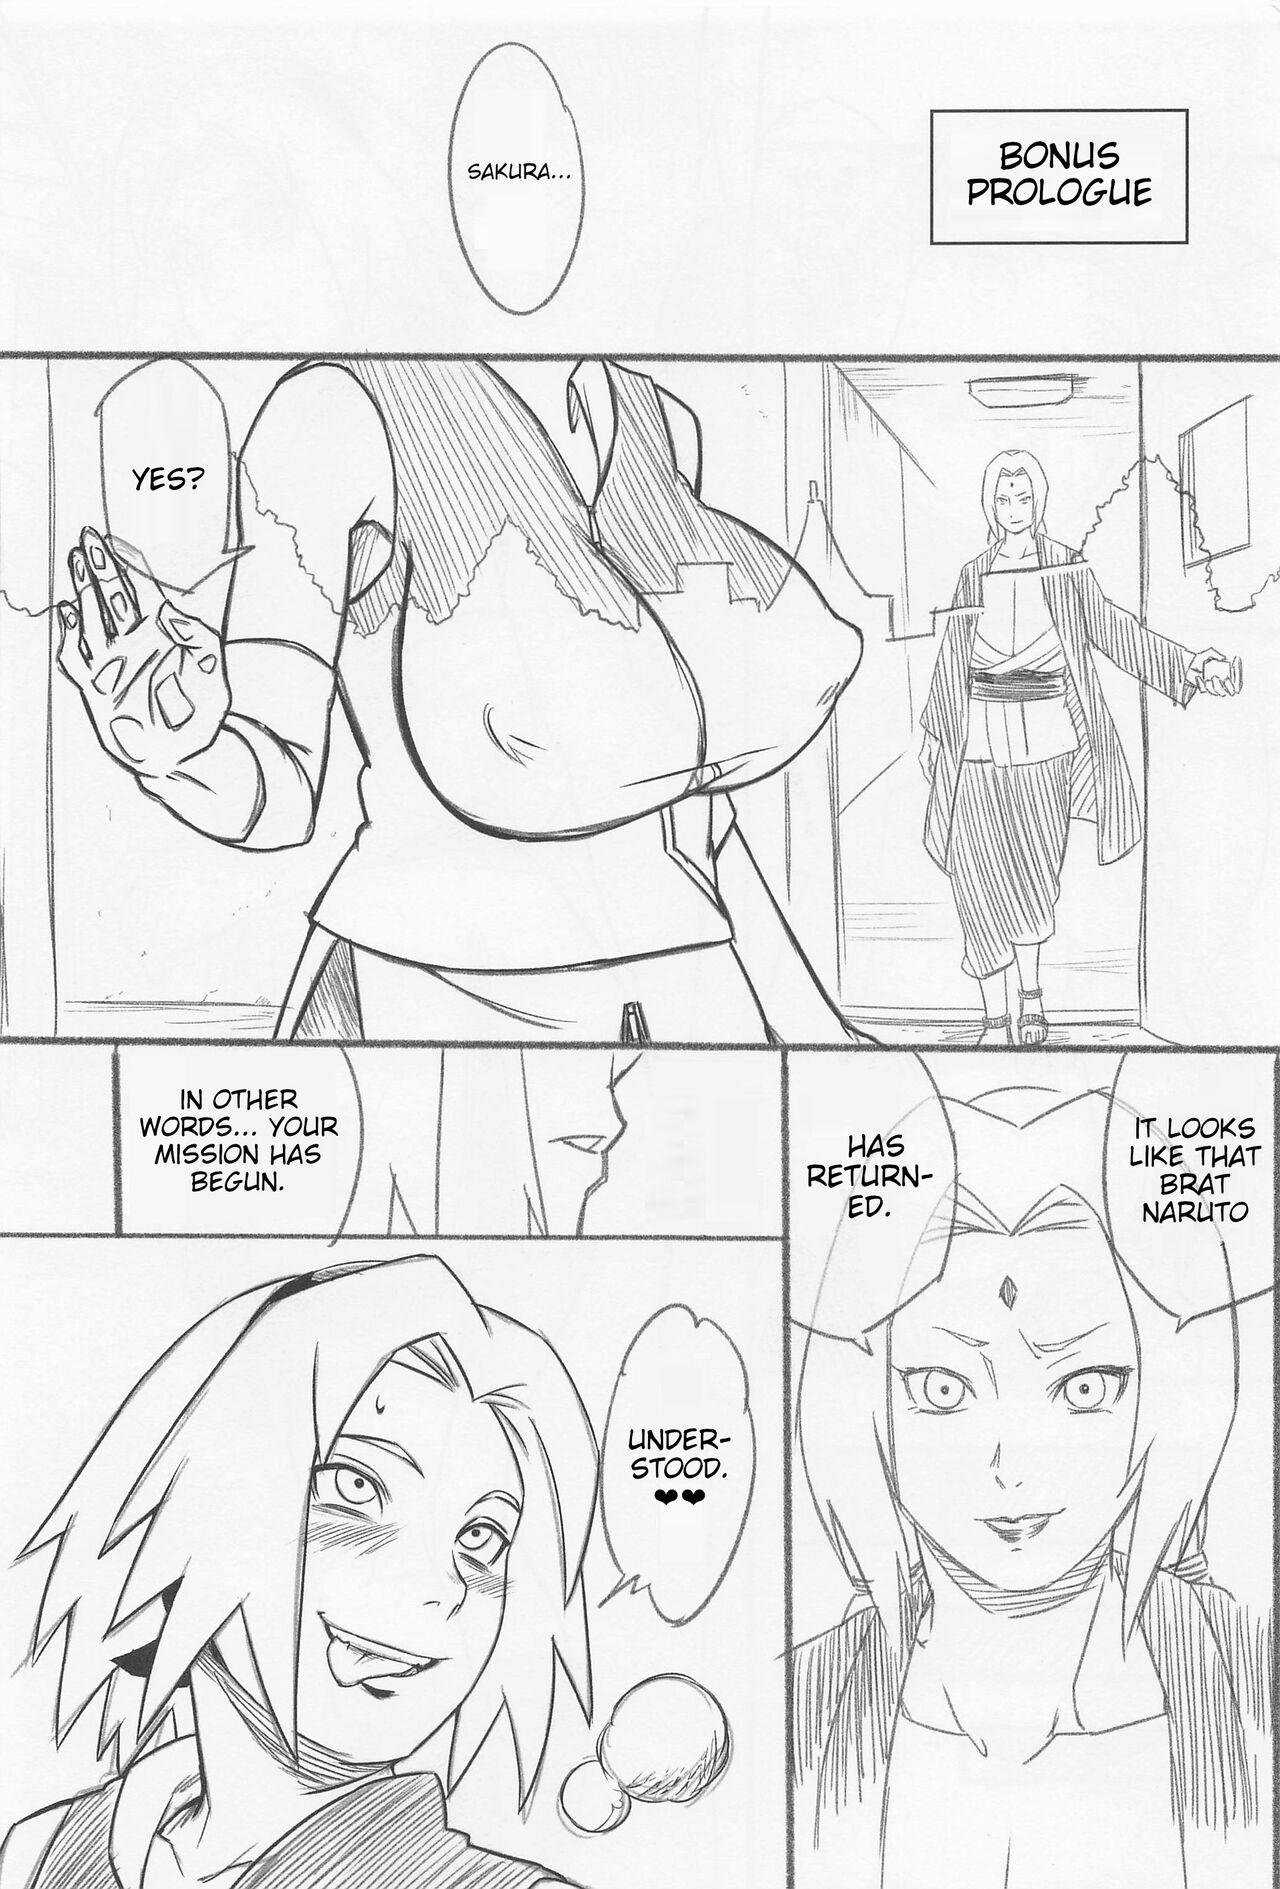 Twinkstudios Hyakugo no Jutsu - Naruto Highheels - Page 2